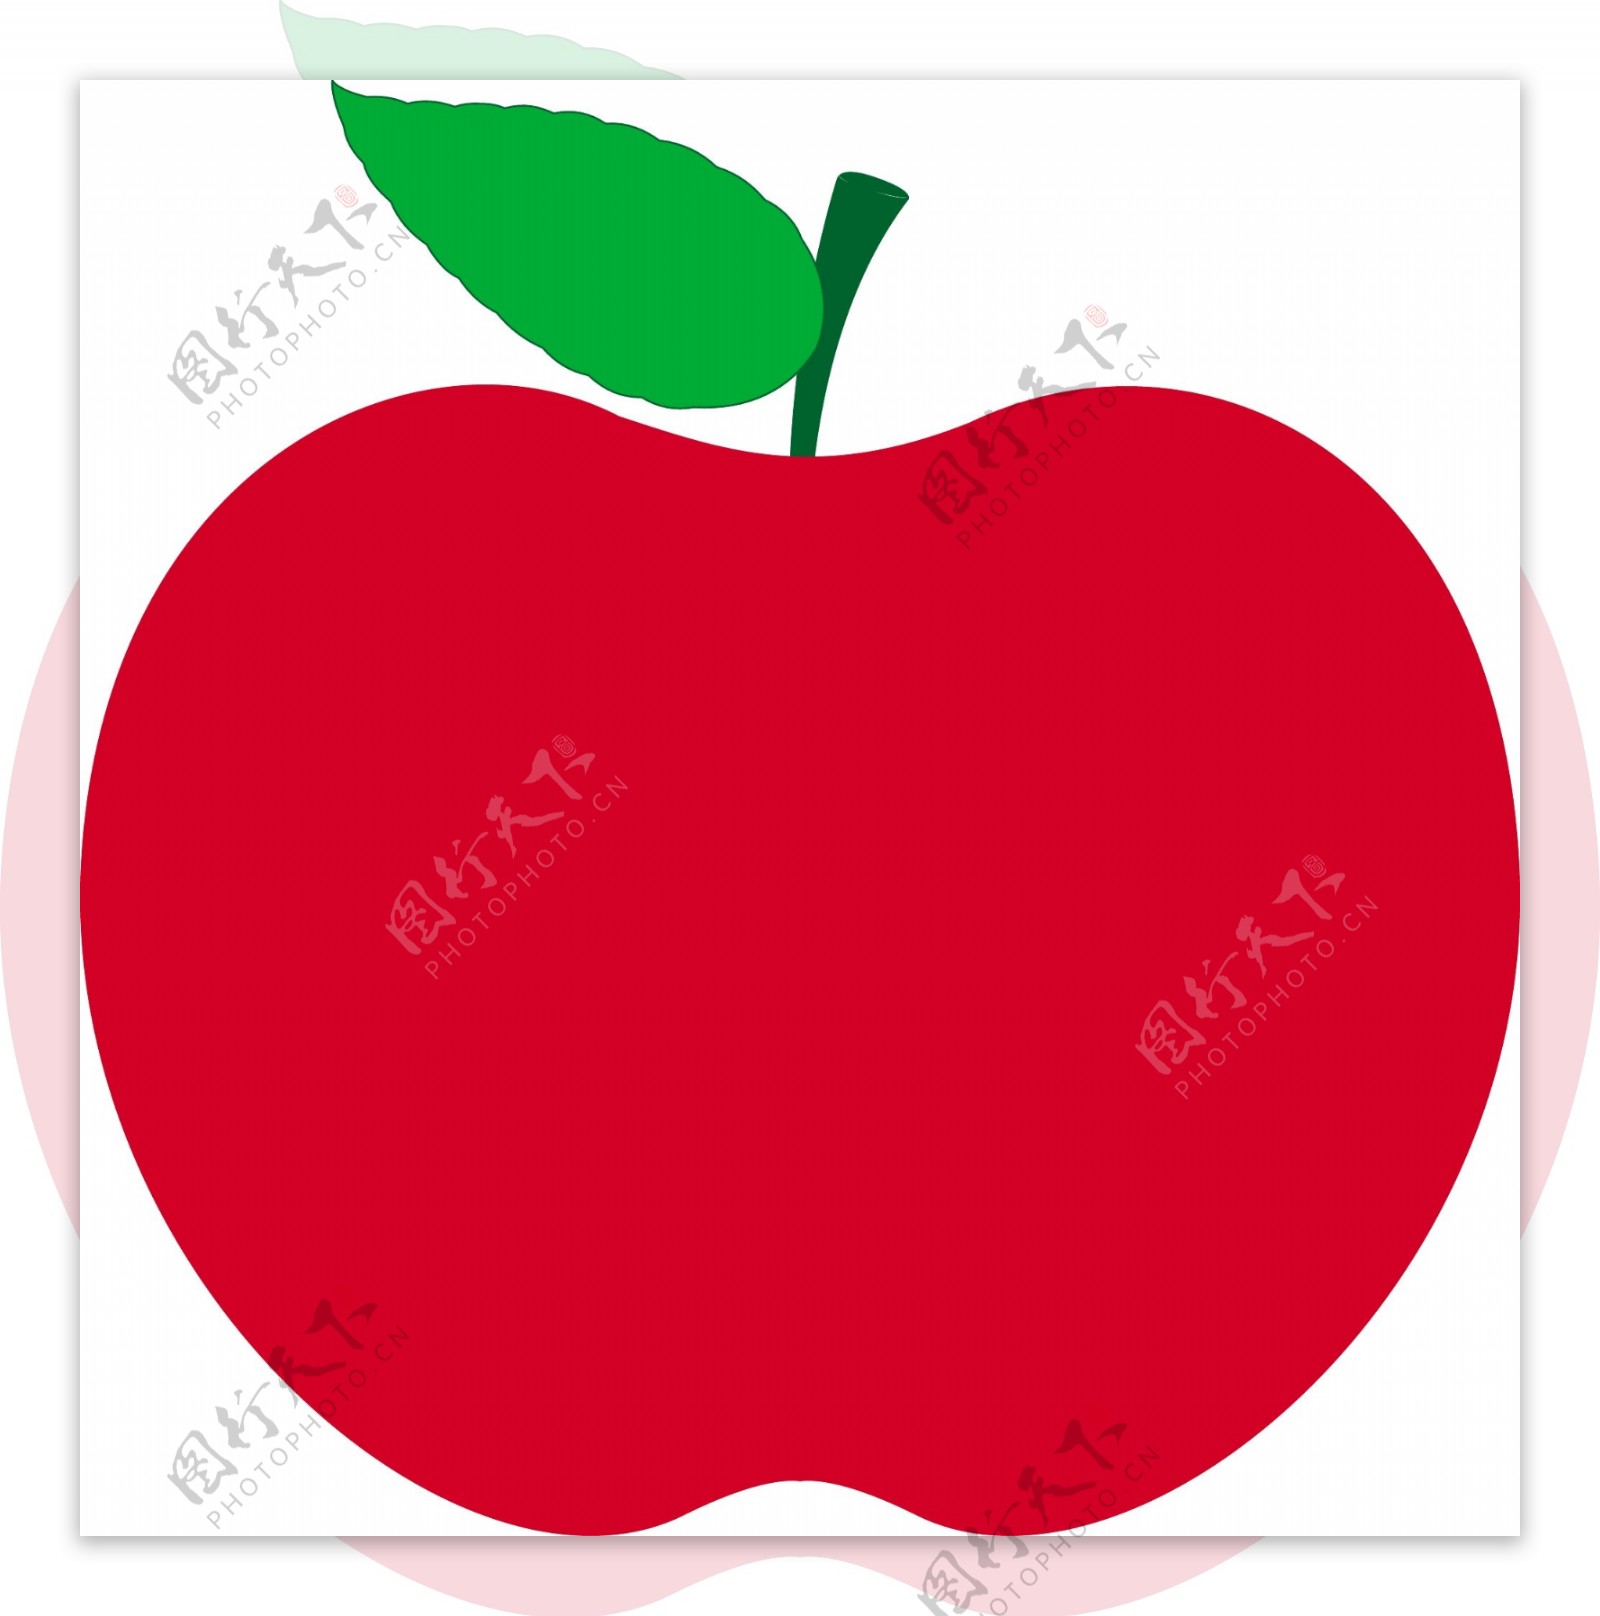 红苹果形状